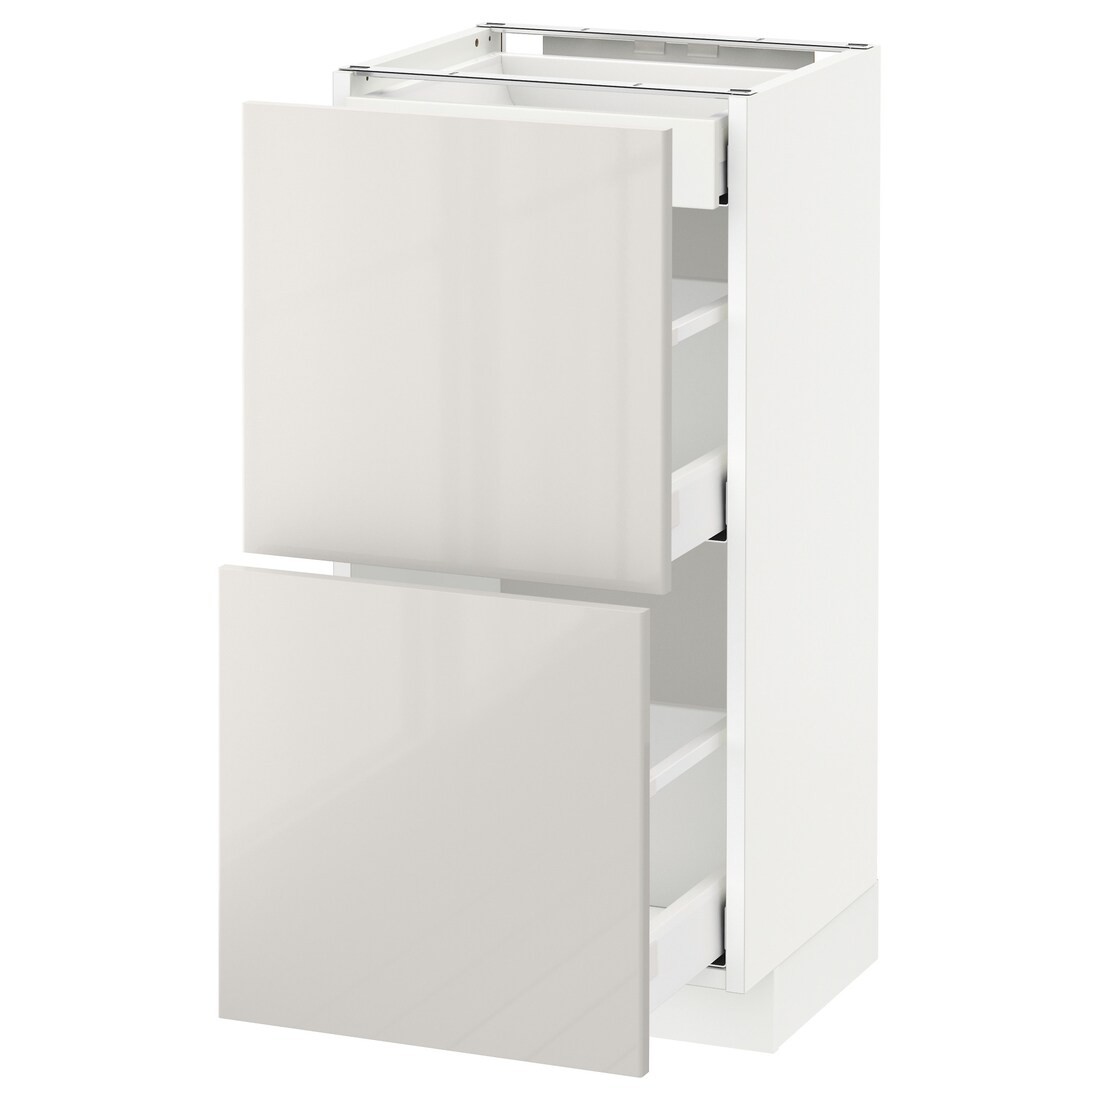 IKEA METOD МЕТОД / MAXIMERA МАКСИМЕРА Напольный шкаф с ящиками, белый / Ringhult светло-серый, 40x37 см 09142590 | 091.425.90